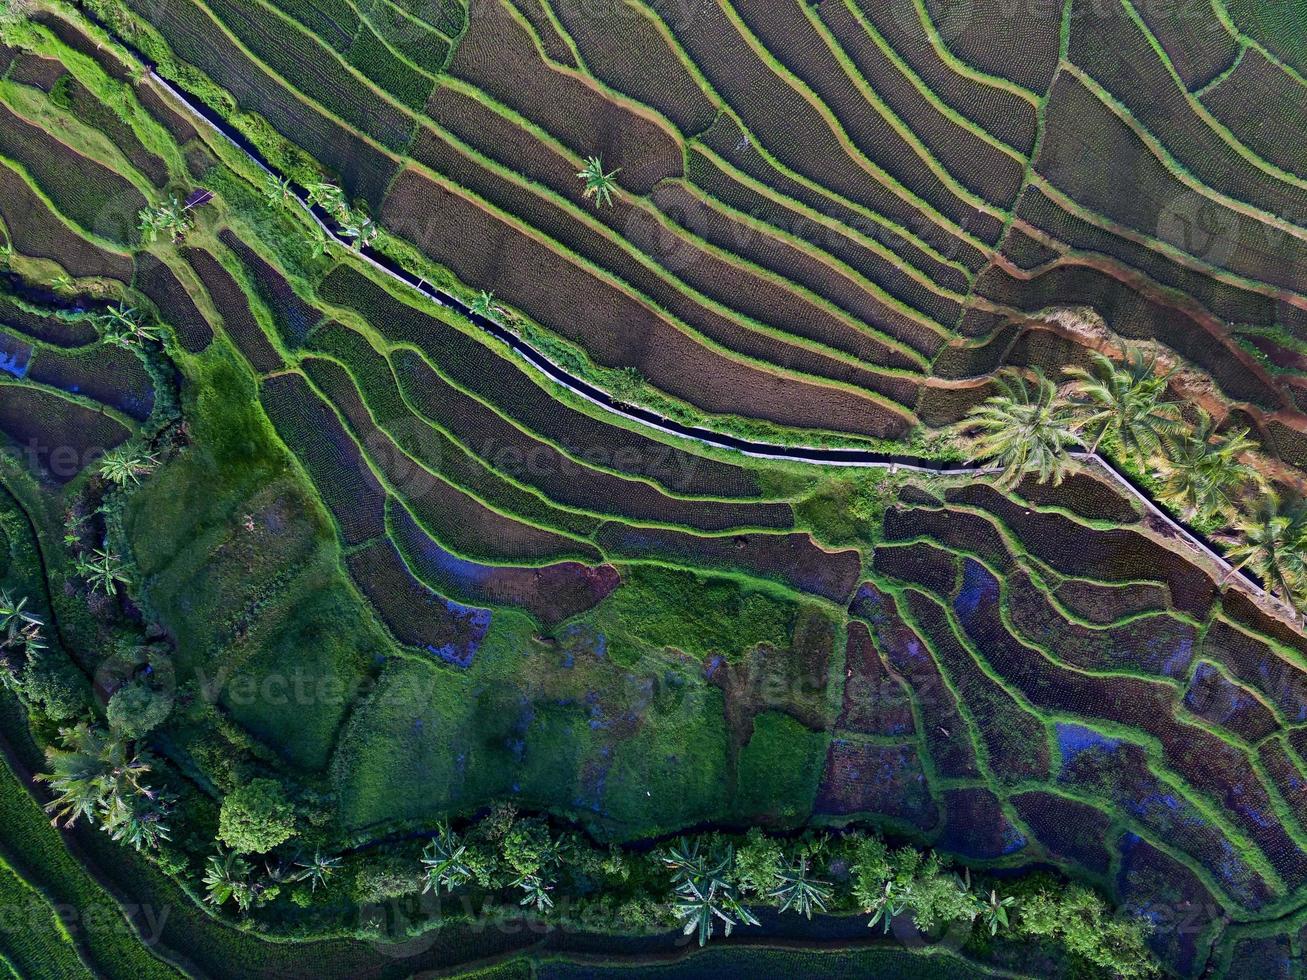 antenn se av grön ris terrasser i indonesien foto